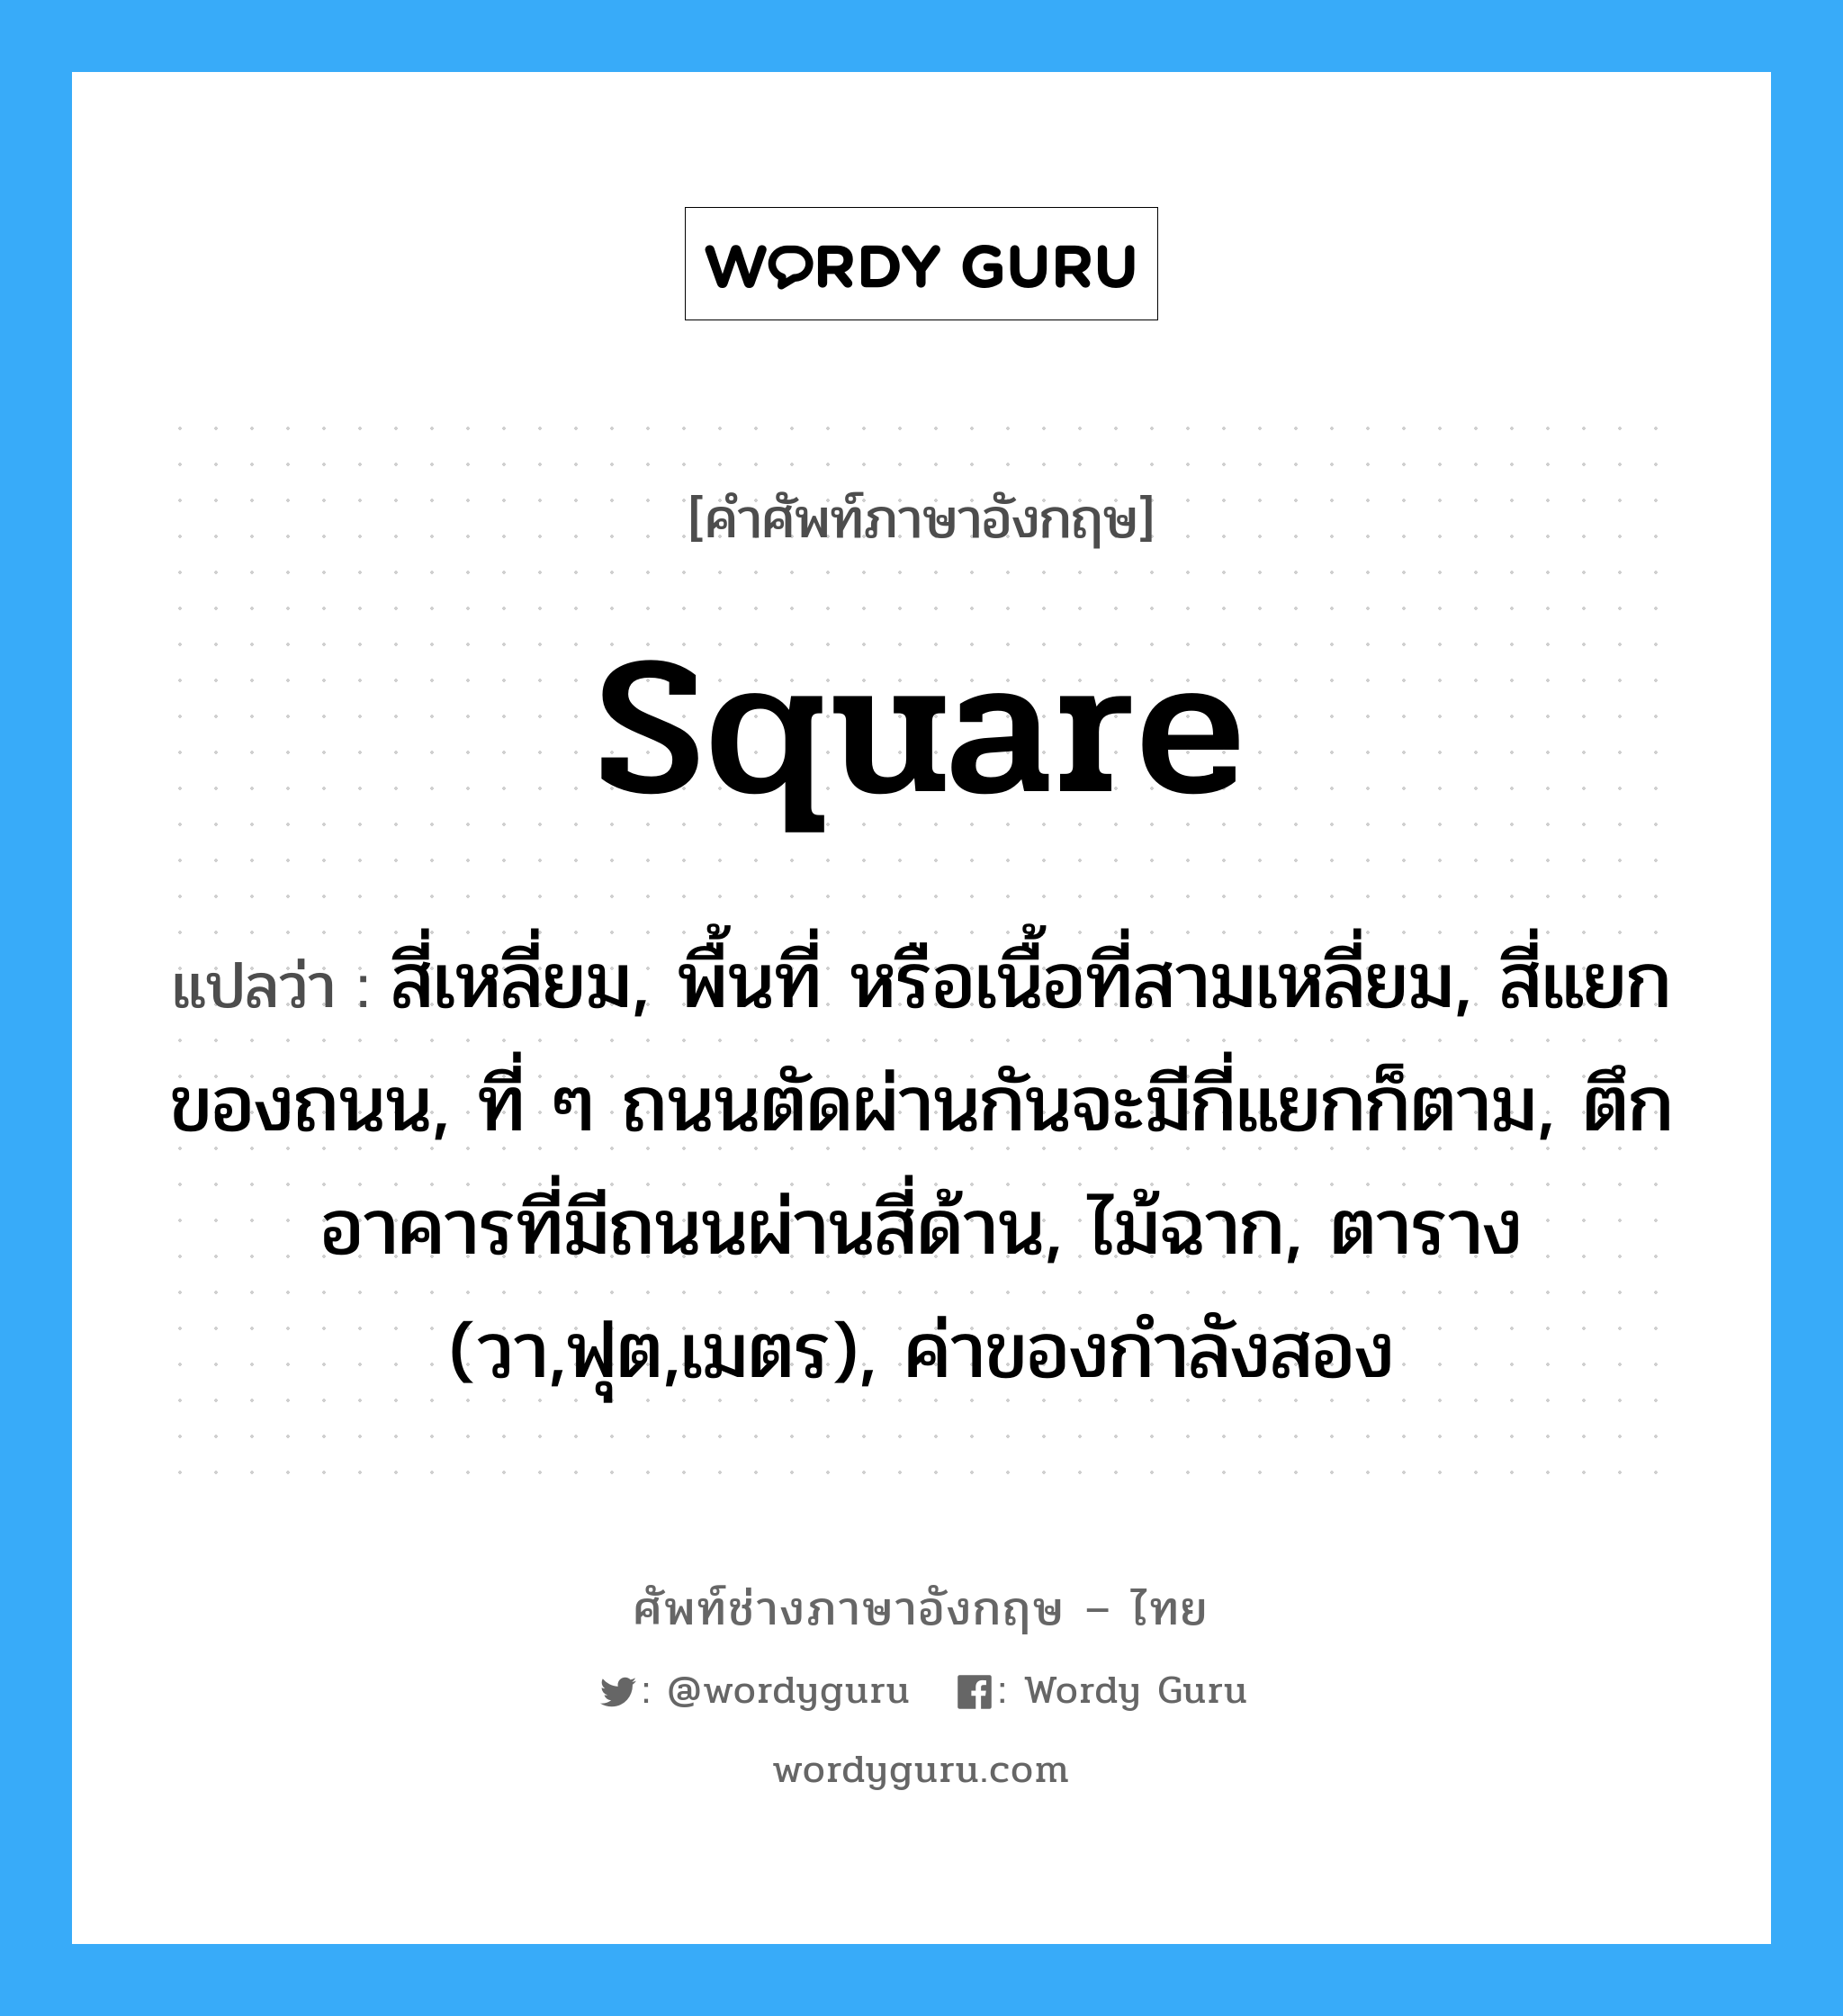 square แปลว่า?, คำศัพท์ช่างภาษาอังกฤษ - ไทย square คำศัพท์ภาษาอังกฤษ square แปลว่า สี่เหลี่ยม, พื้นที่ หรือเนื้อที่สามเหลี่ยม, สี่แยกของถนน, ที่ ๆ ถนนตัดผ่านกันจะมีกี่แยกก็ตาม, ตึกอาคารที่มีถนนผ่านสี่ด้าน, ไม้ฉาก, ตาราง (วา,ฟุต,เมตร), ค่าของกำลังสอง